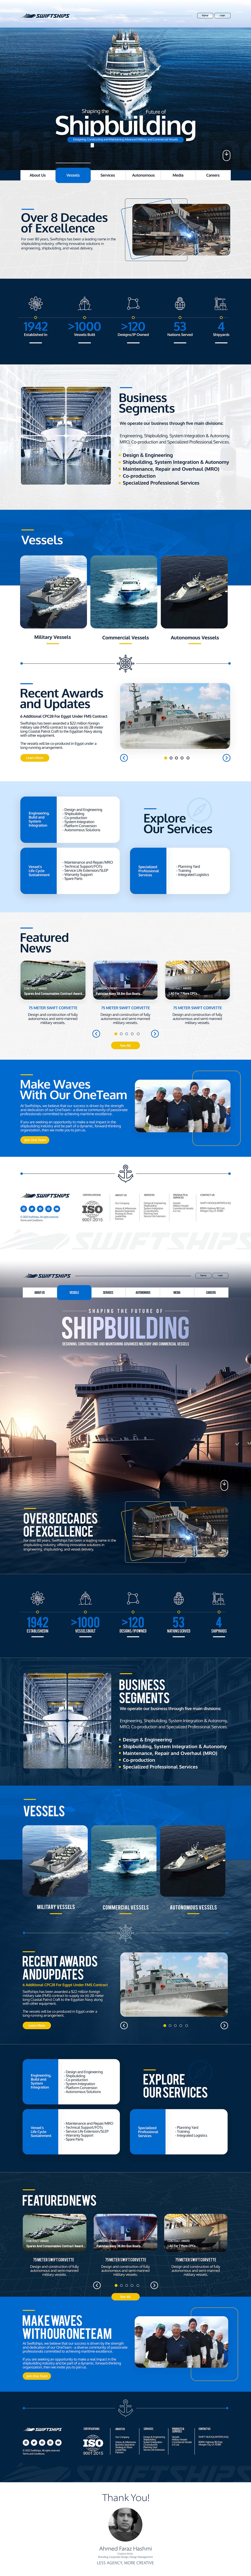 Website websitedesign ui design landing page design ships shipbuilding future design DesignTrends TRENDINGDESIGN